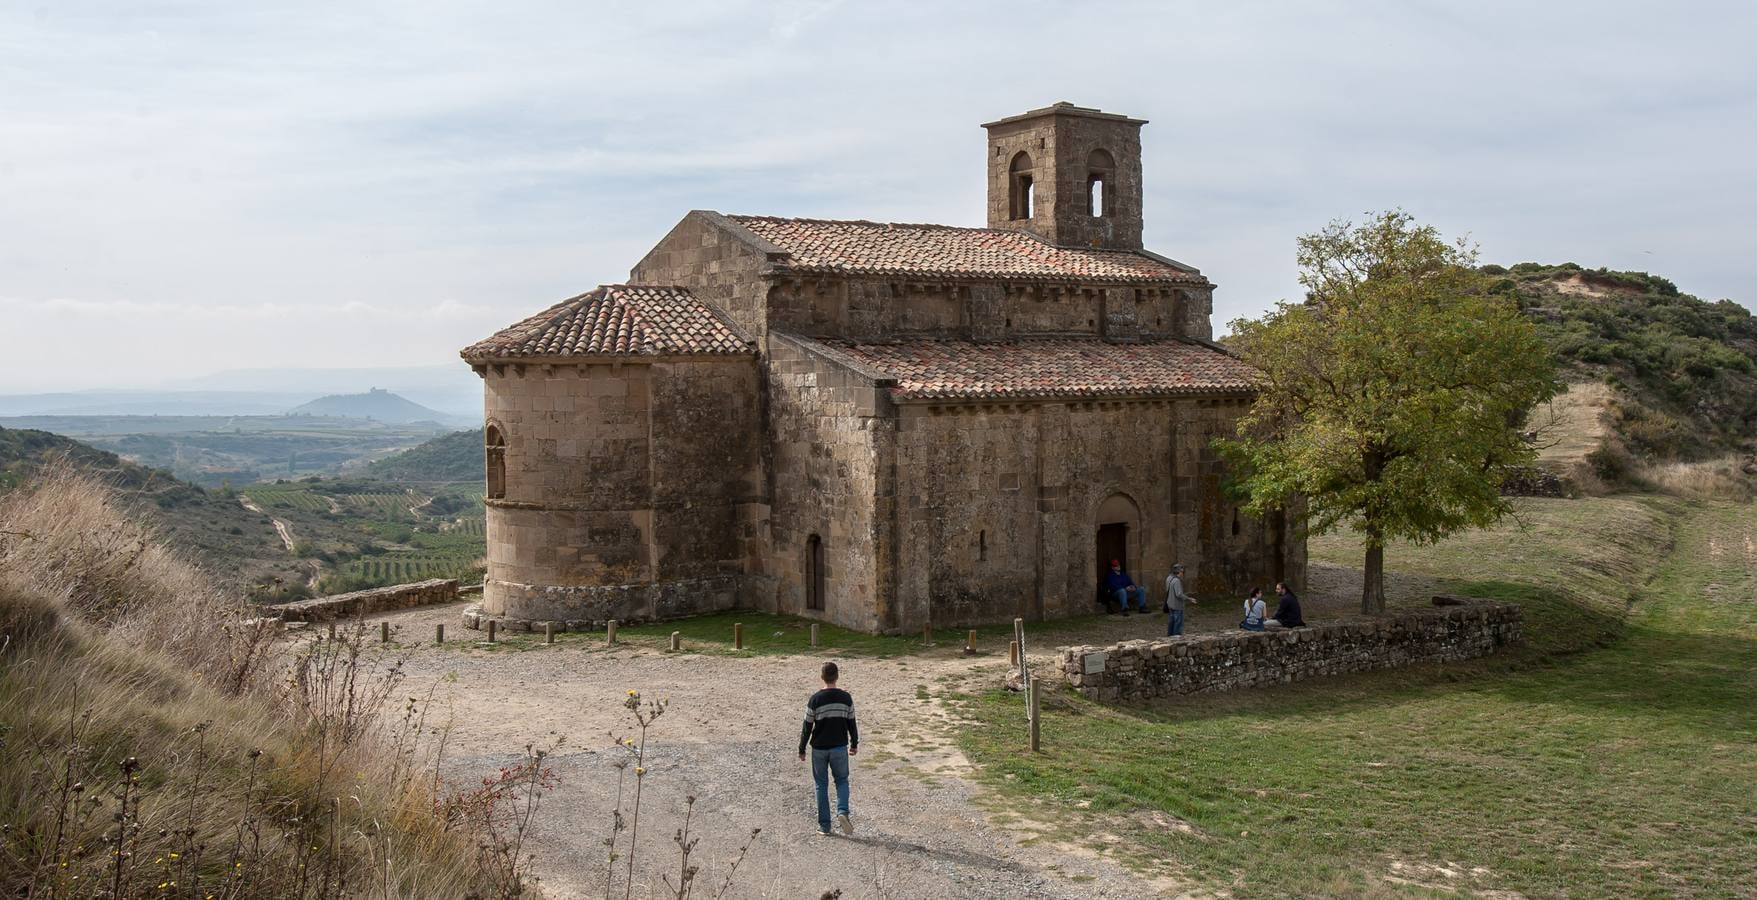 La Rioja Turismo estrena ruta enoturística inspirada en la novela de Andrés Pascual 'A merced de un dios salvaje'